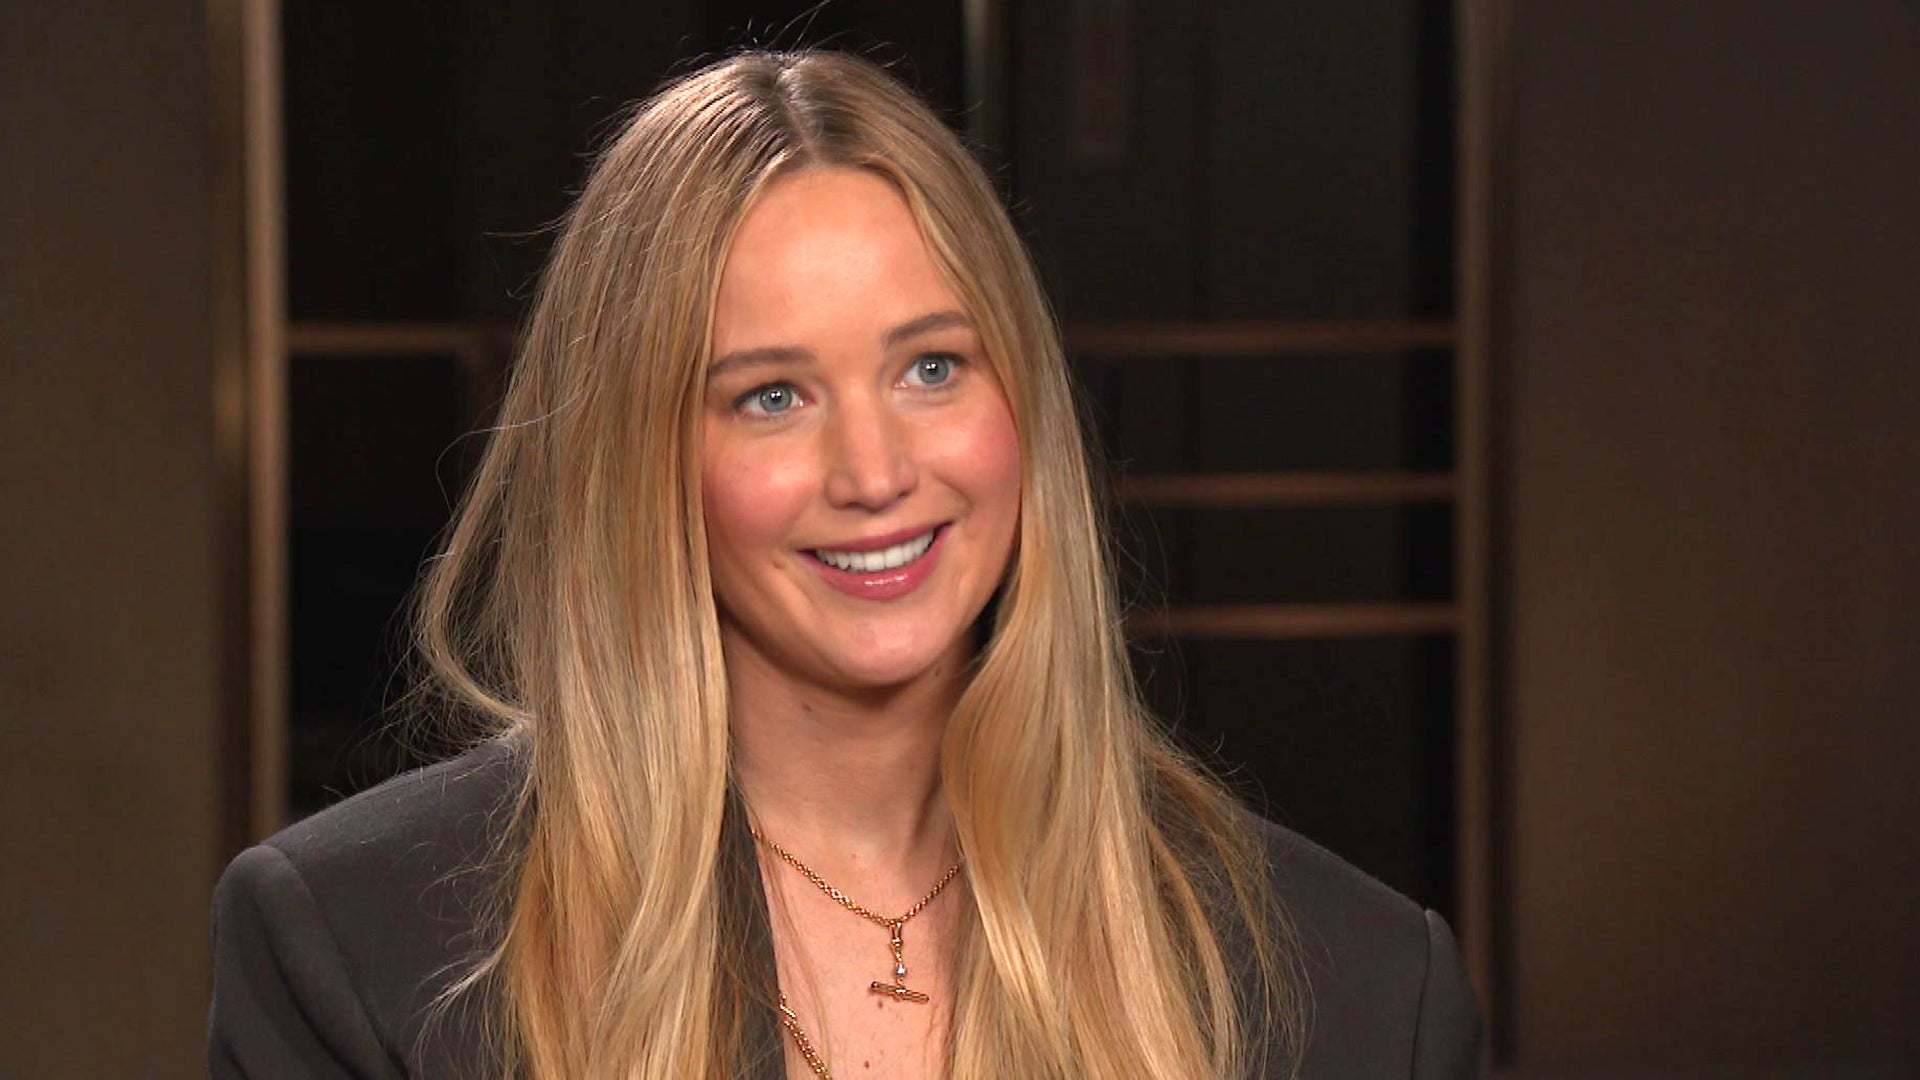 Jennifer Lawrence talks love life, politics in new interviews